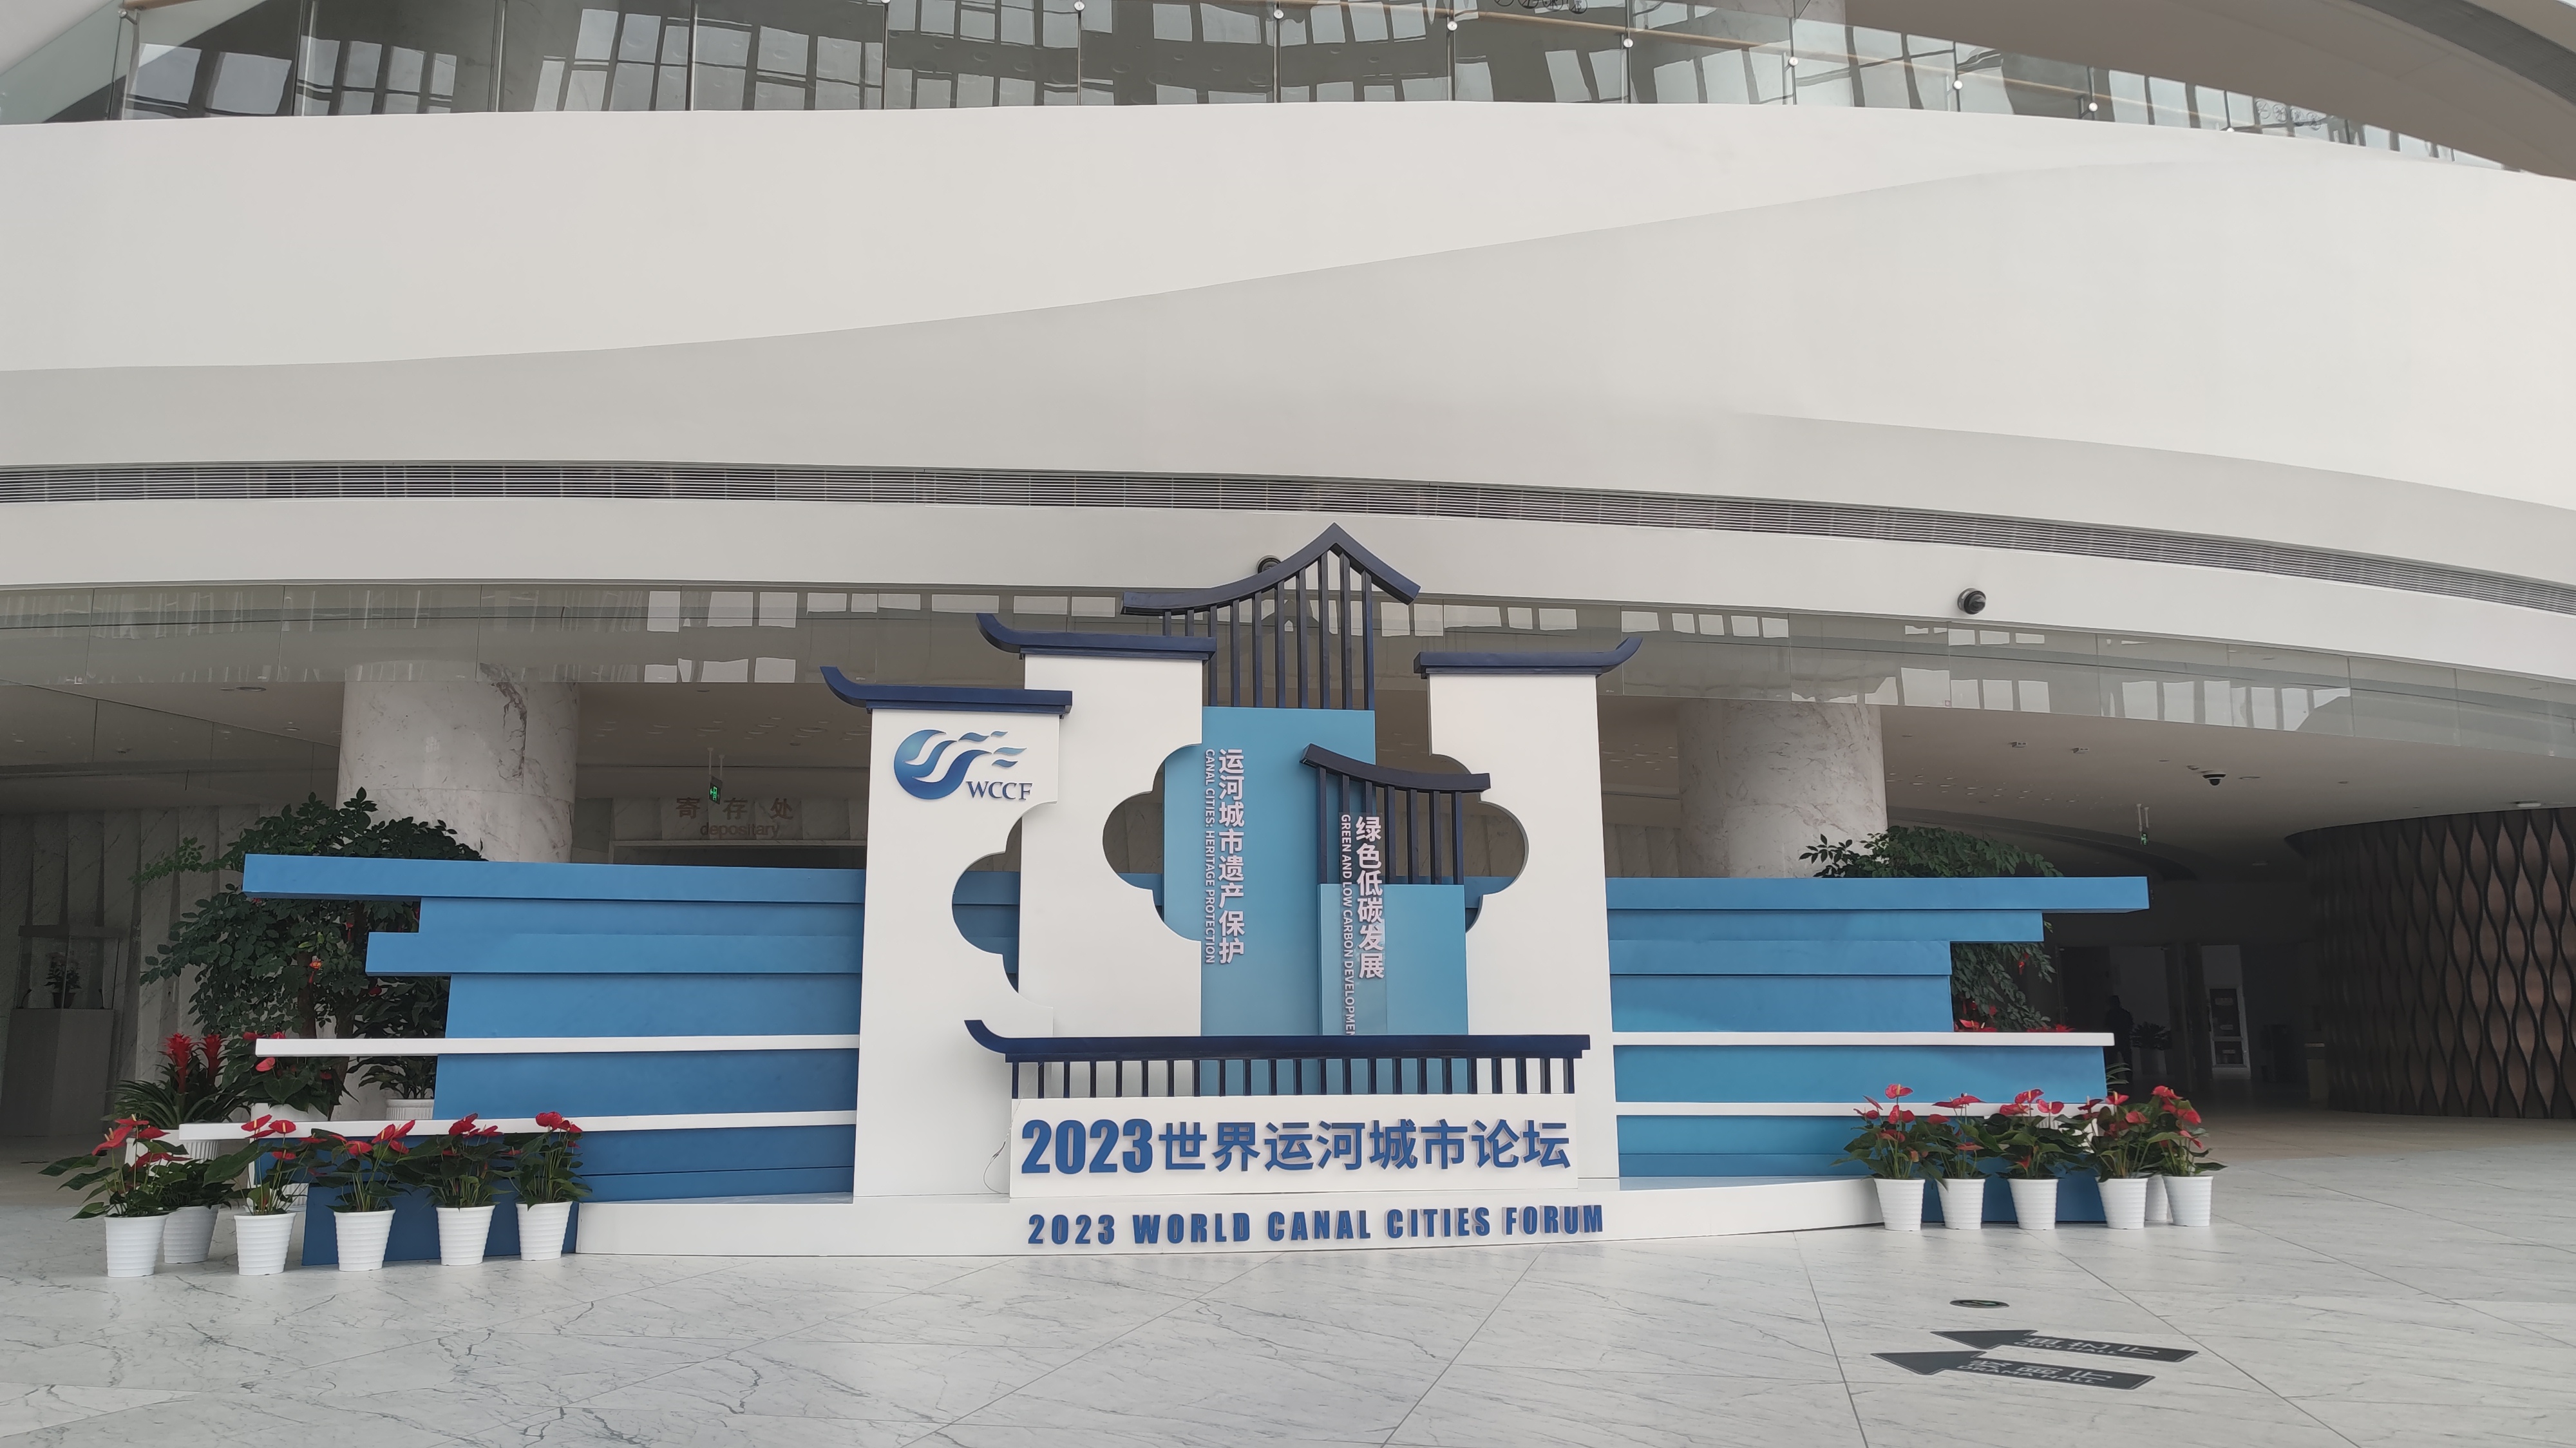 2023世界運河城市論壇即將於8月24日在揚州開幕。揚州市委網信辦供圖